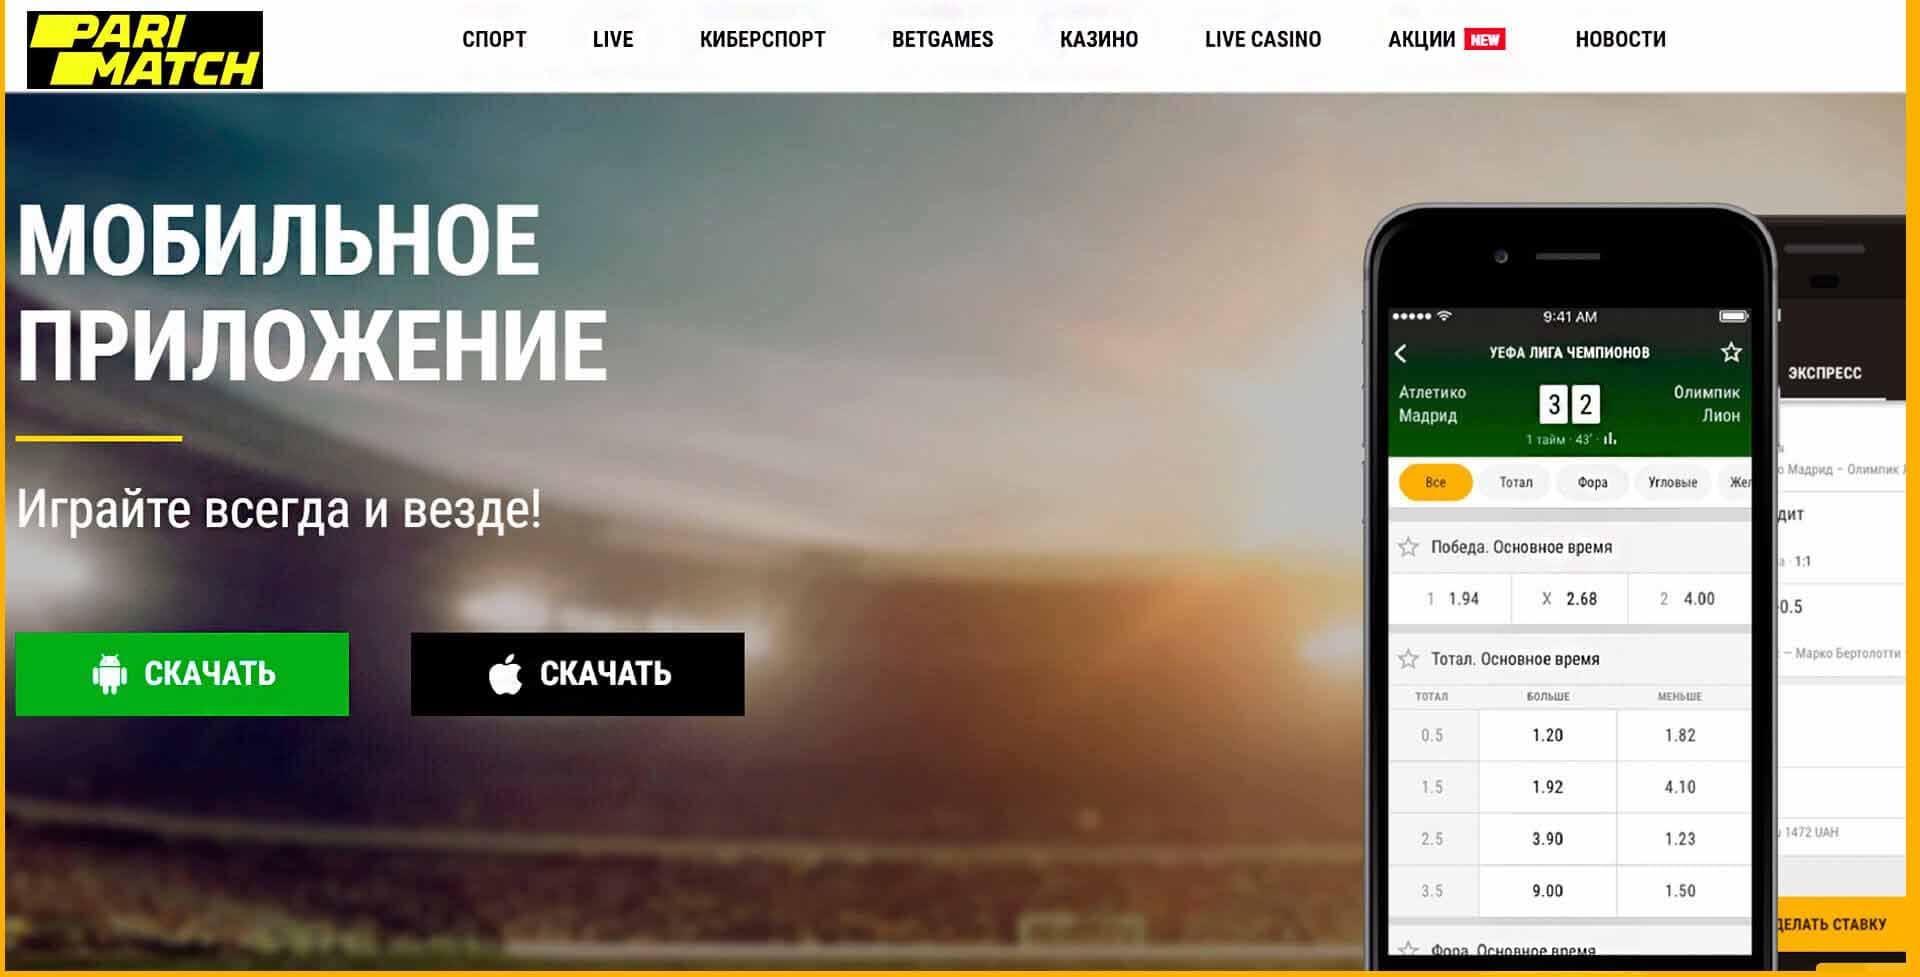 Мобильное приложение ставки на спорт boy казино зеркало официальный